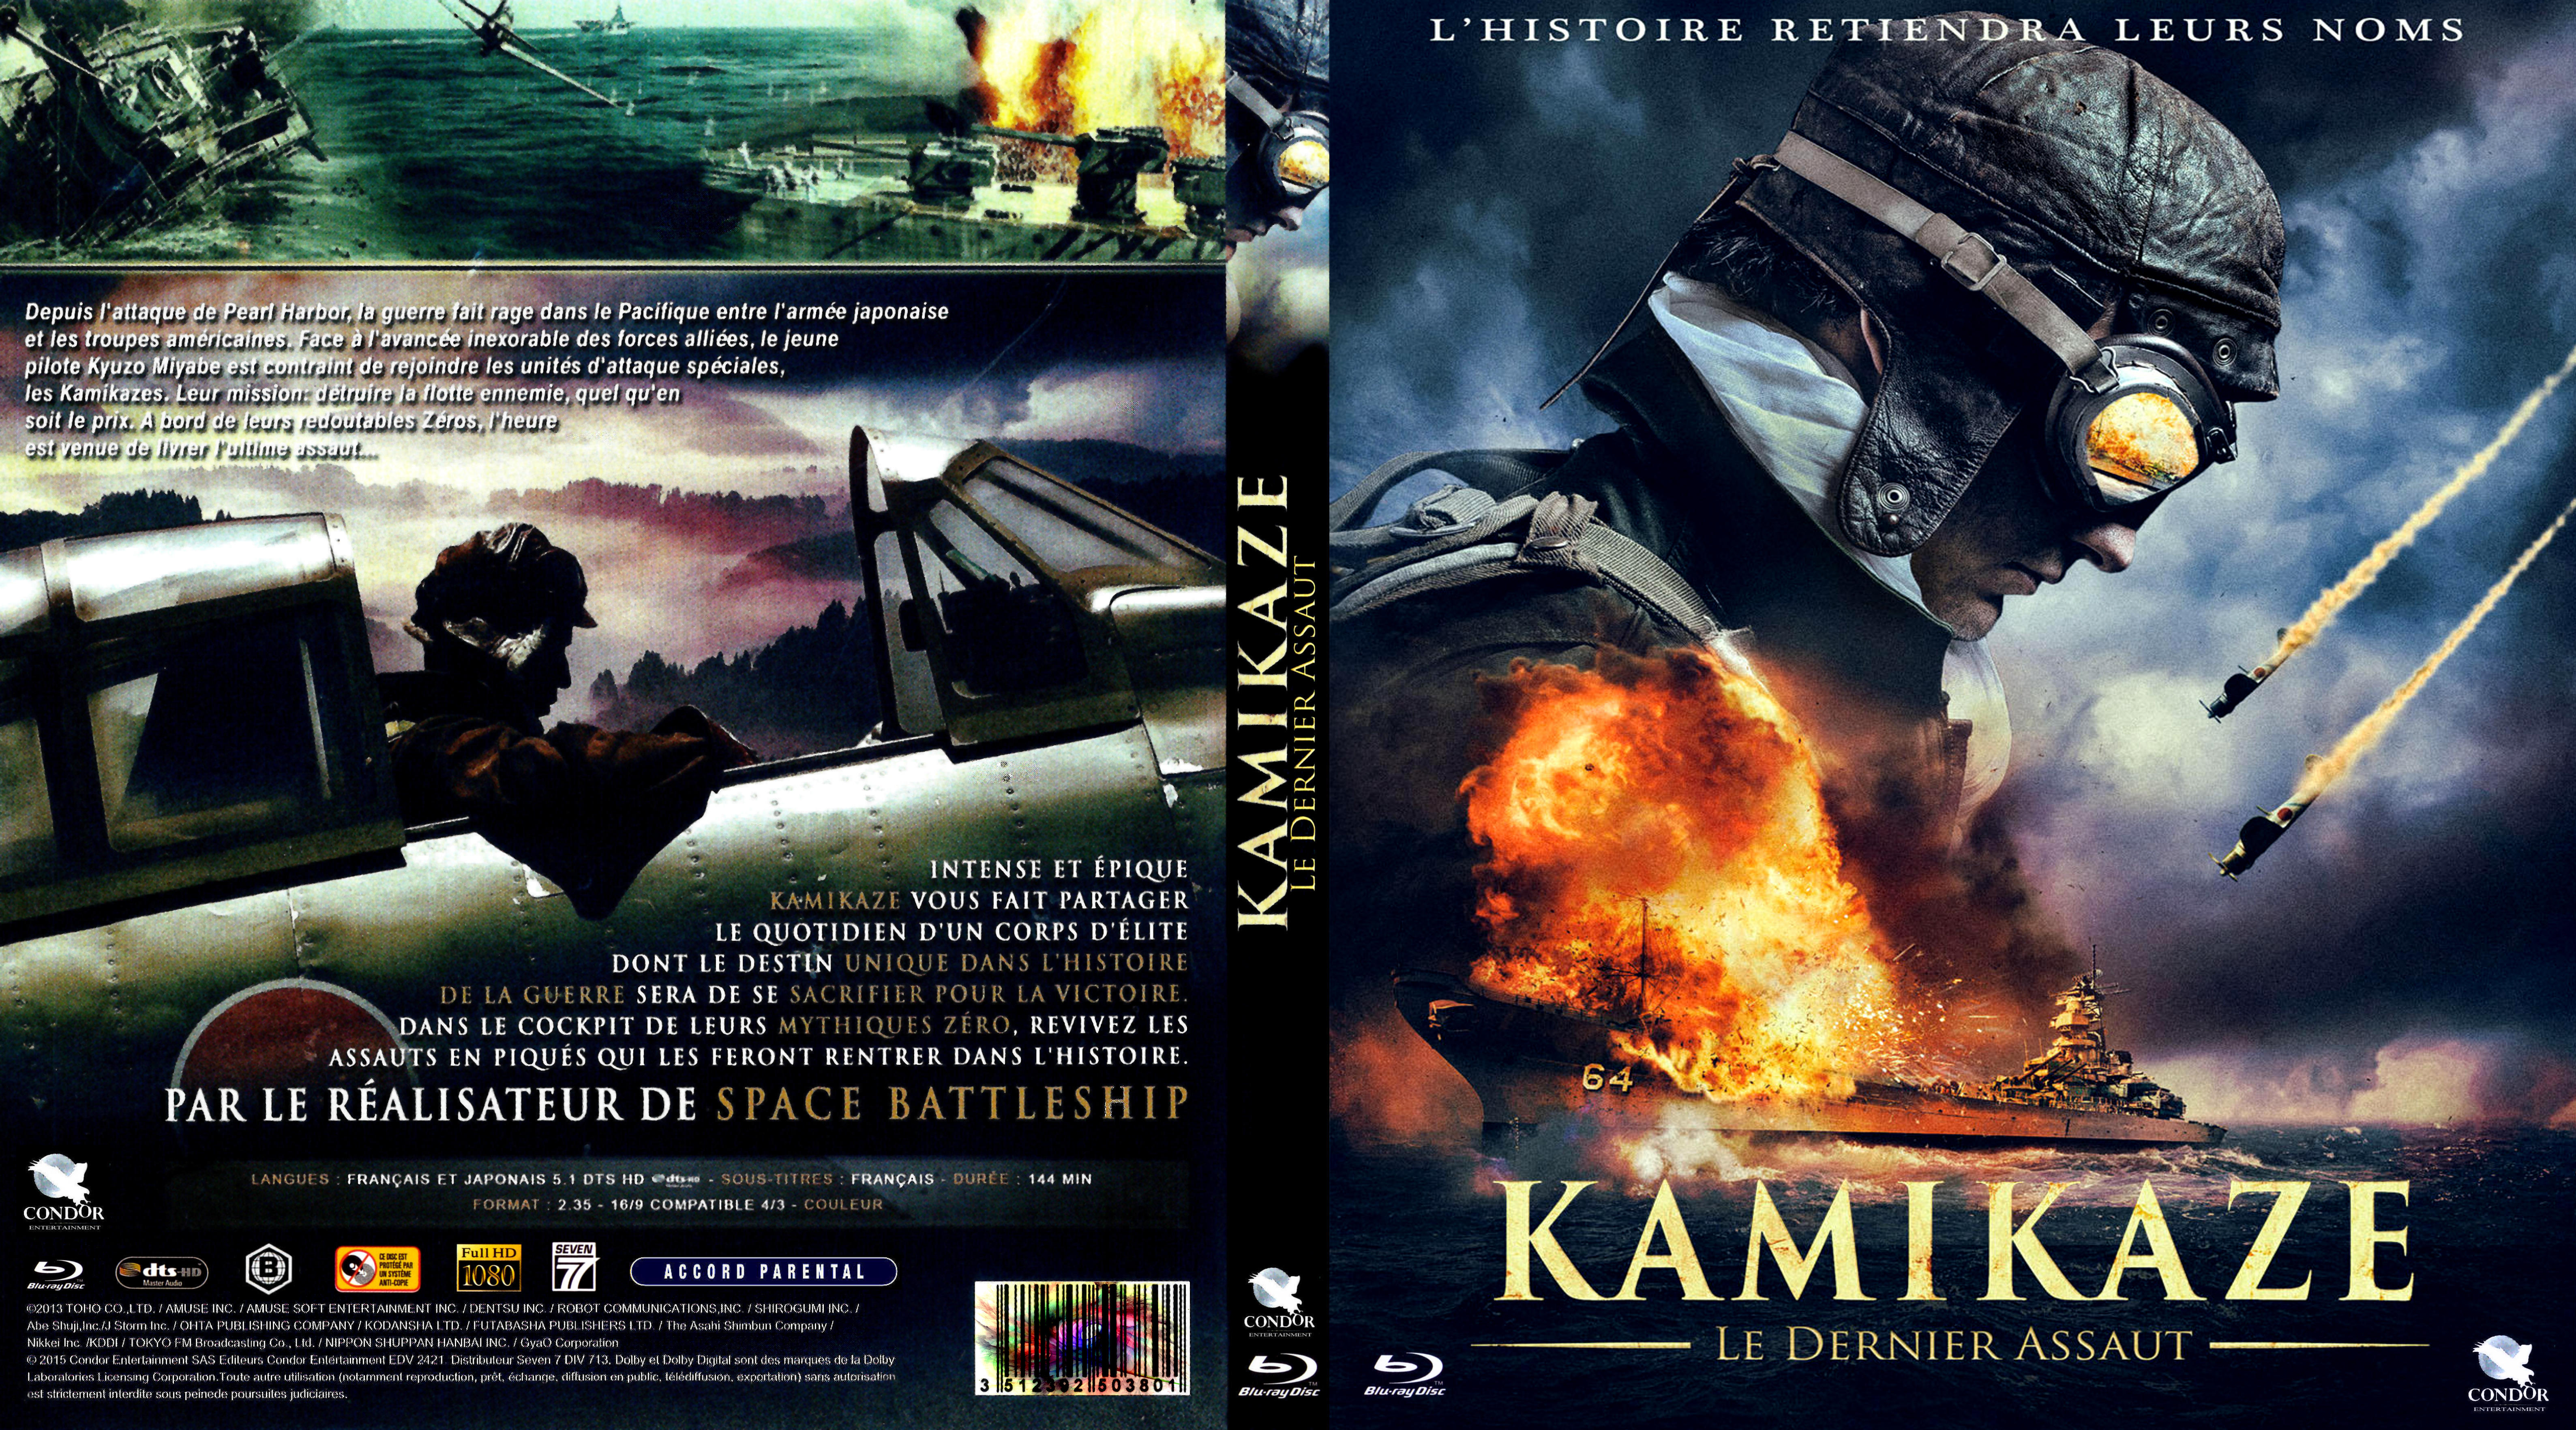 Jaquette DVD Kamikaze le dernier assaut (BLU-RAY)